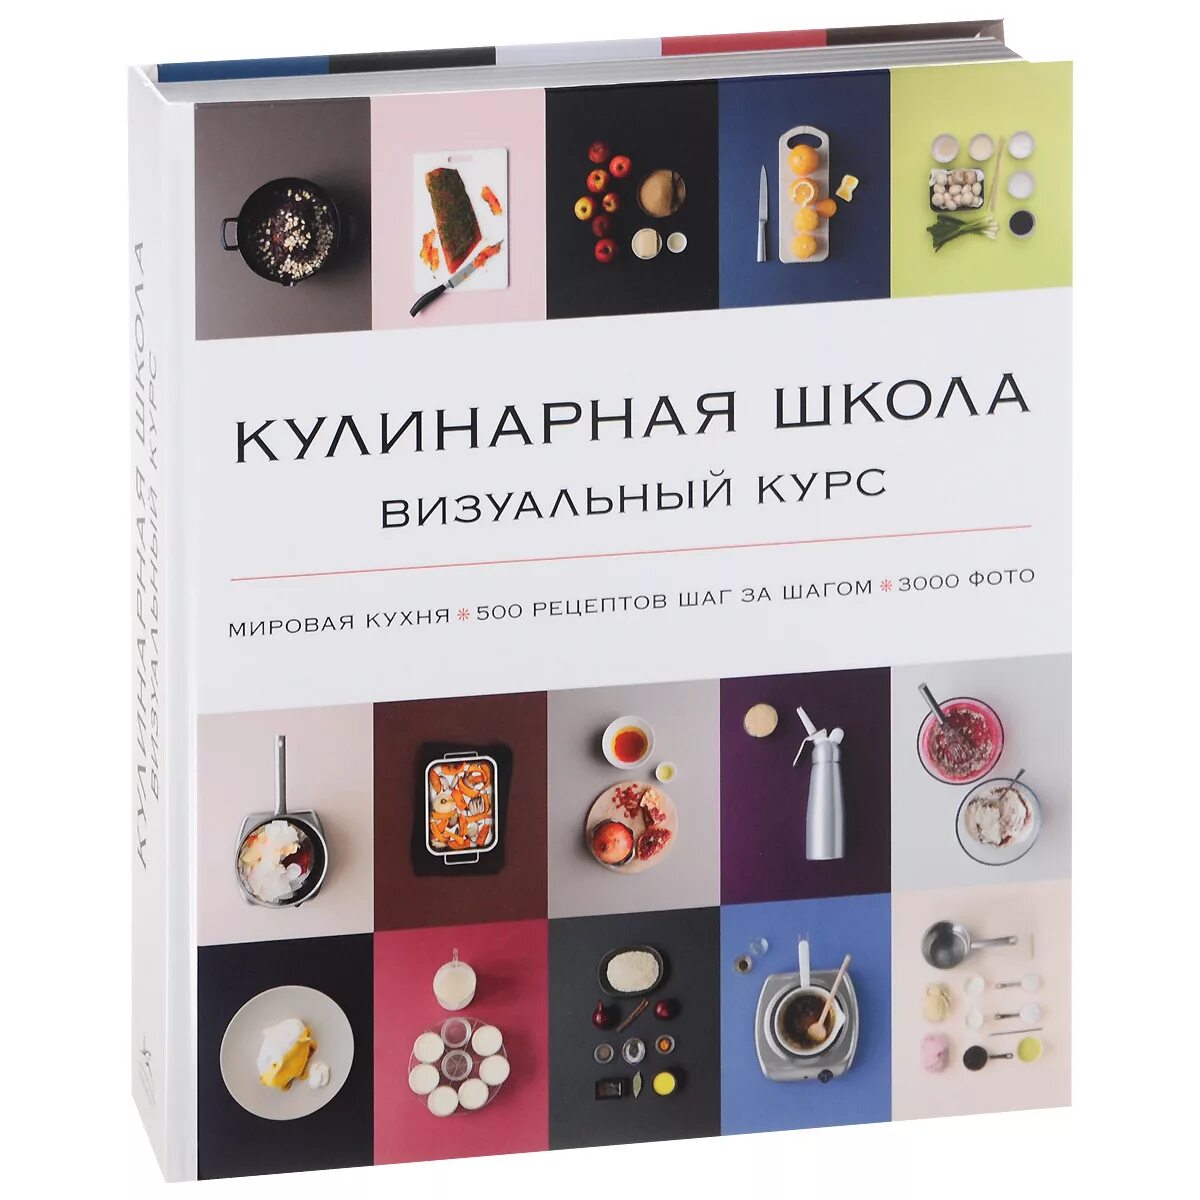 Мировая кухня 500 рецептов. Кулинарная школа визуальный курс книга. Книга мировая кухня 500 рецептов. Мировая кухня книга.